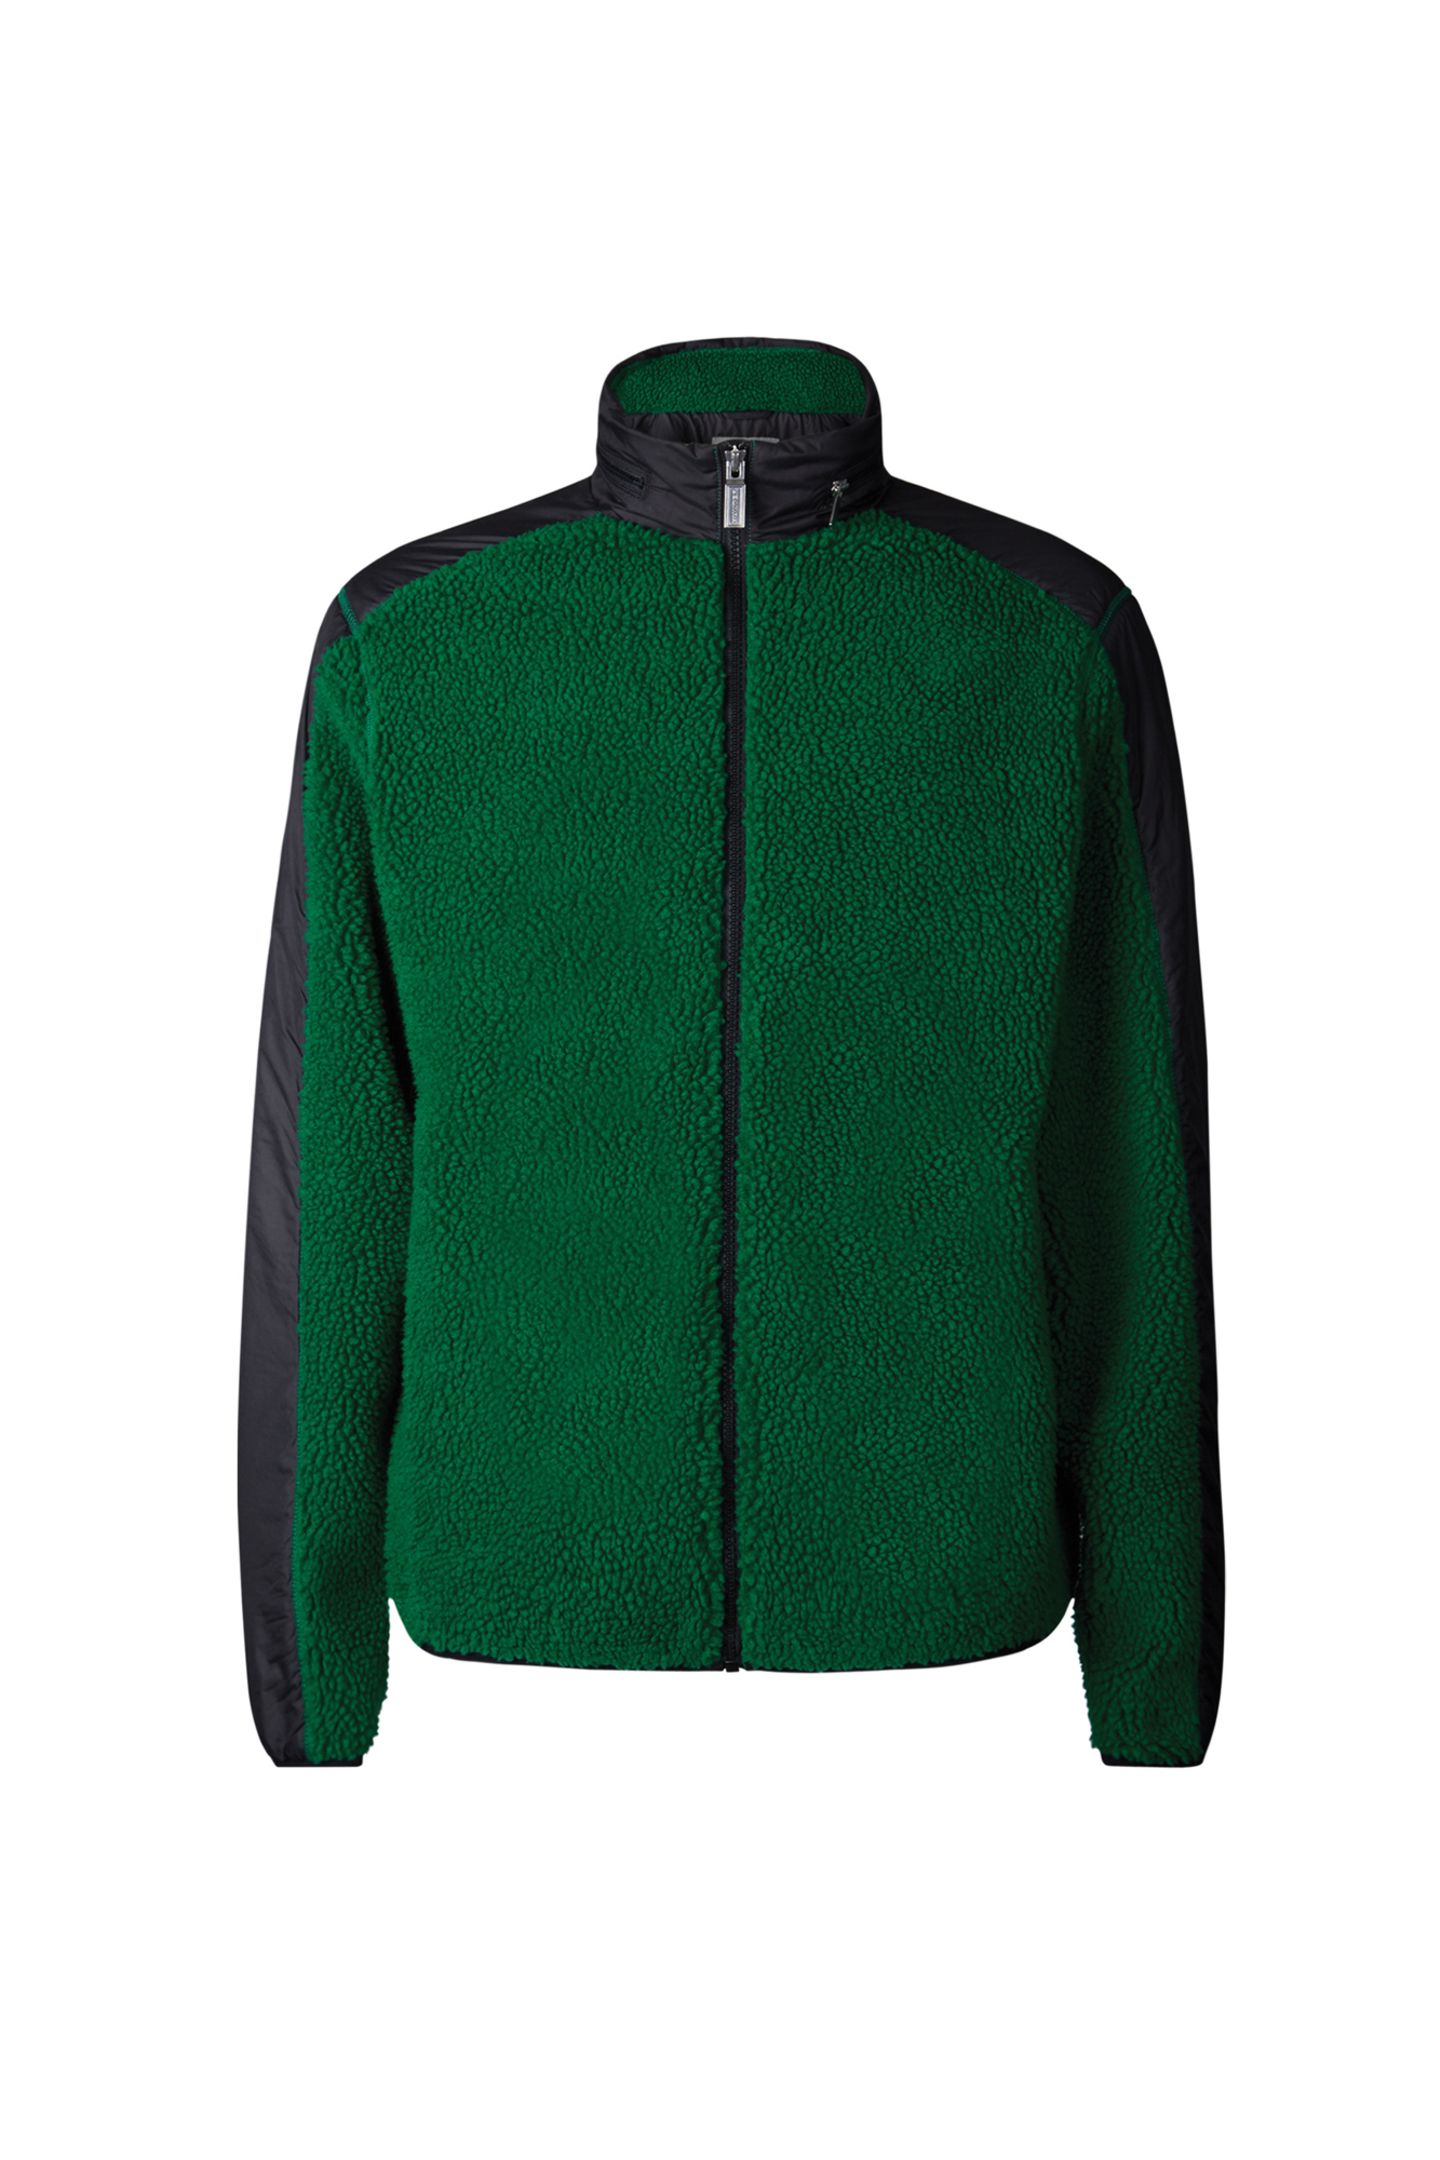 Für romantische Winterspaziergänge ist diese Fleece Jacke perfekt. Von Hunter, 125 Euro 